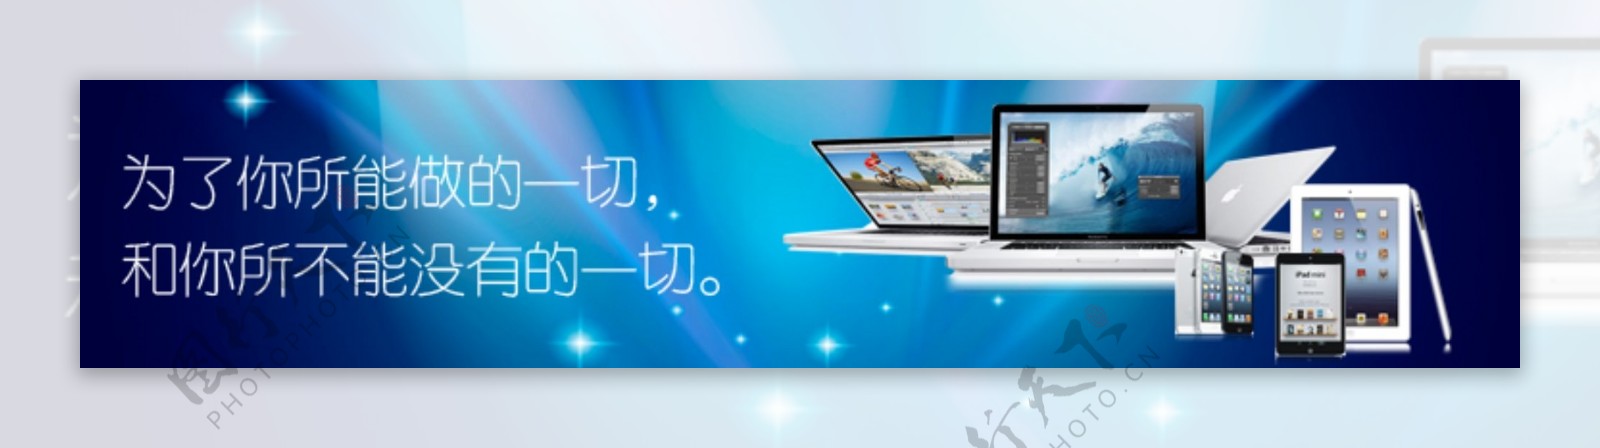 电子产品banner促销